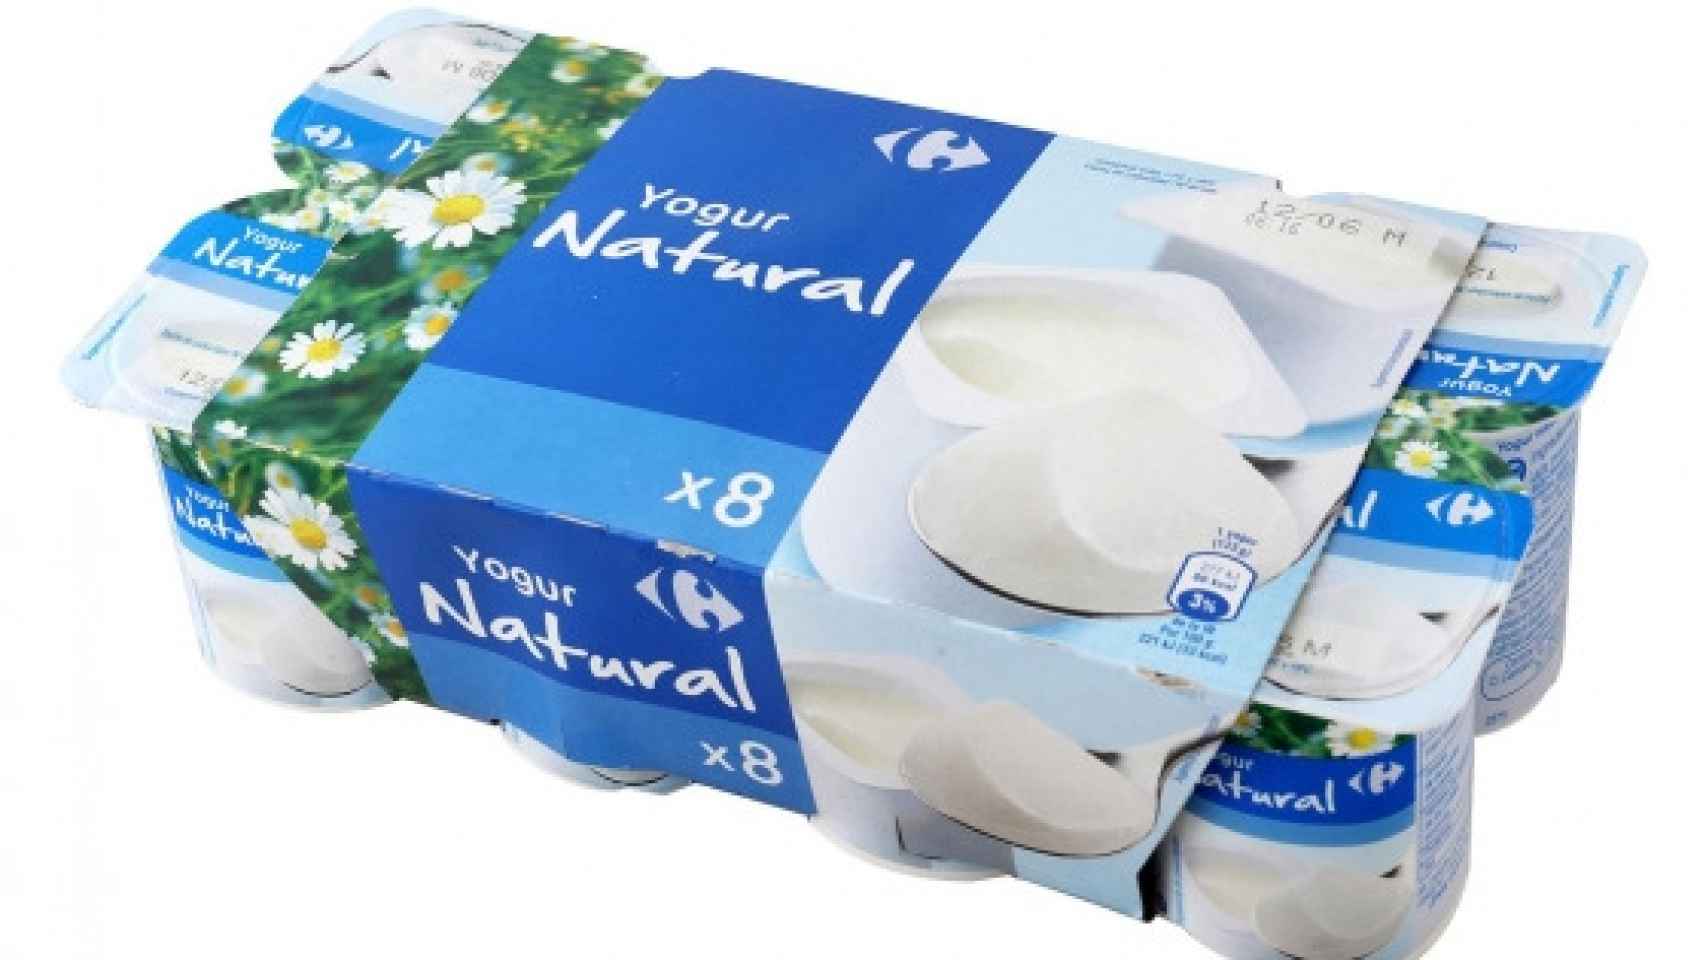 Yogur natural Carrefour.